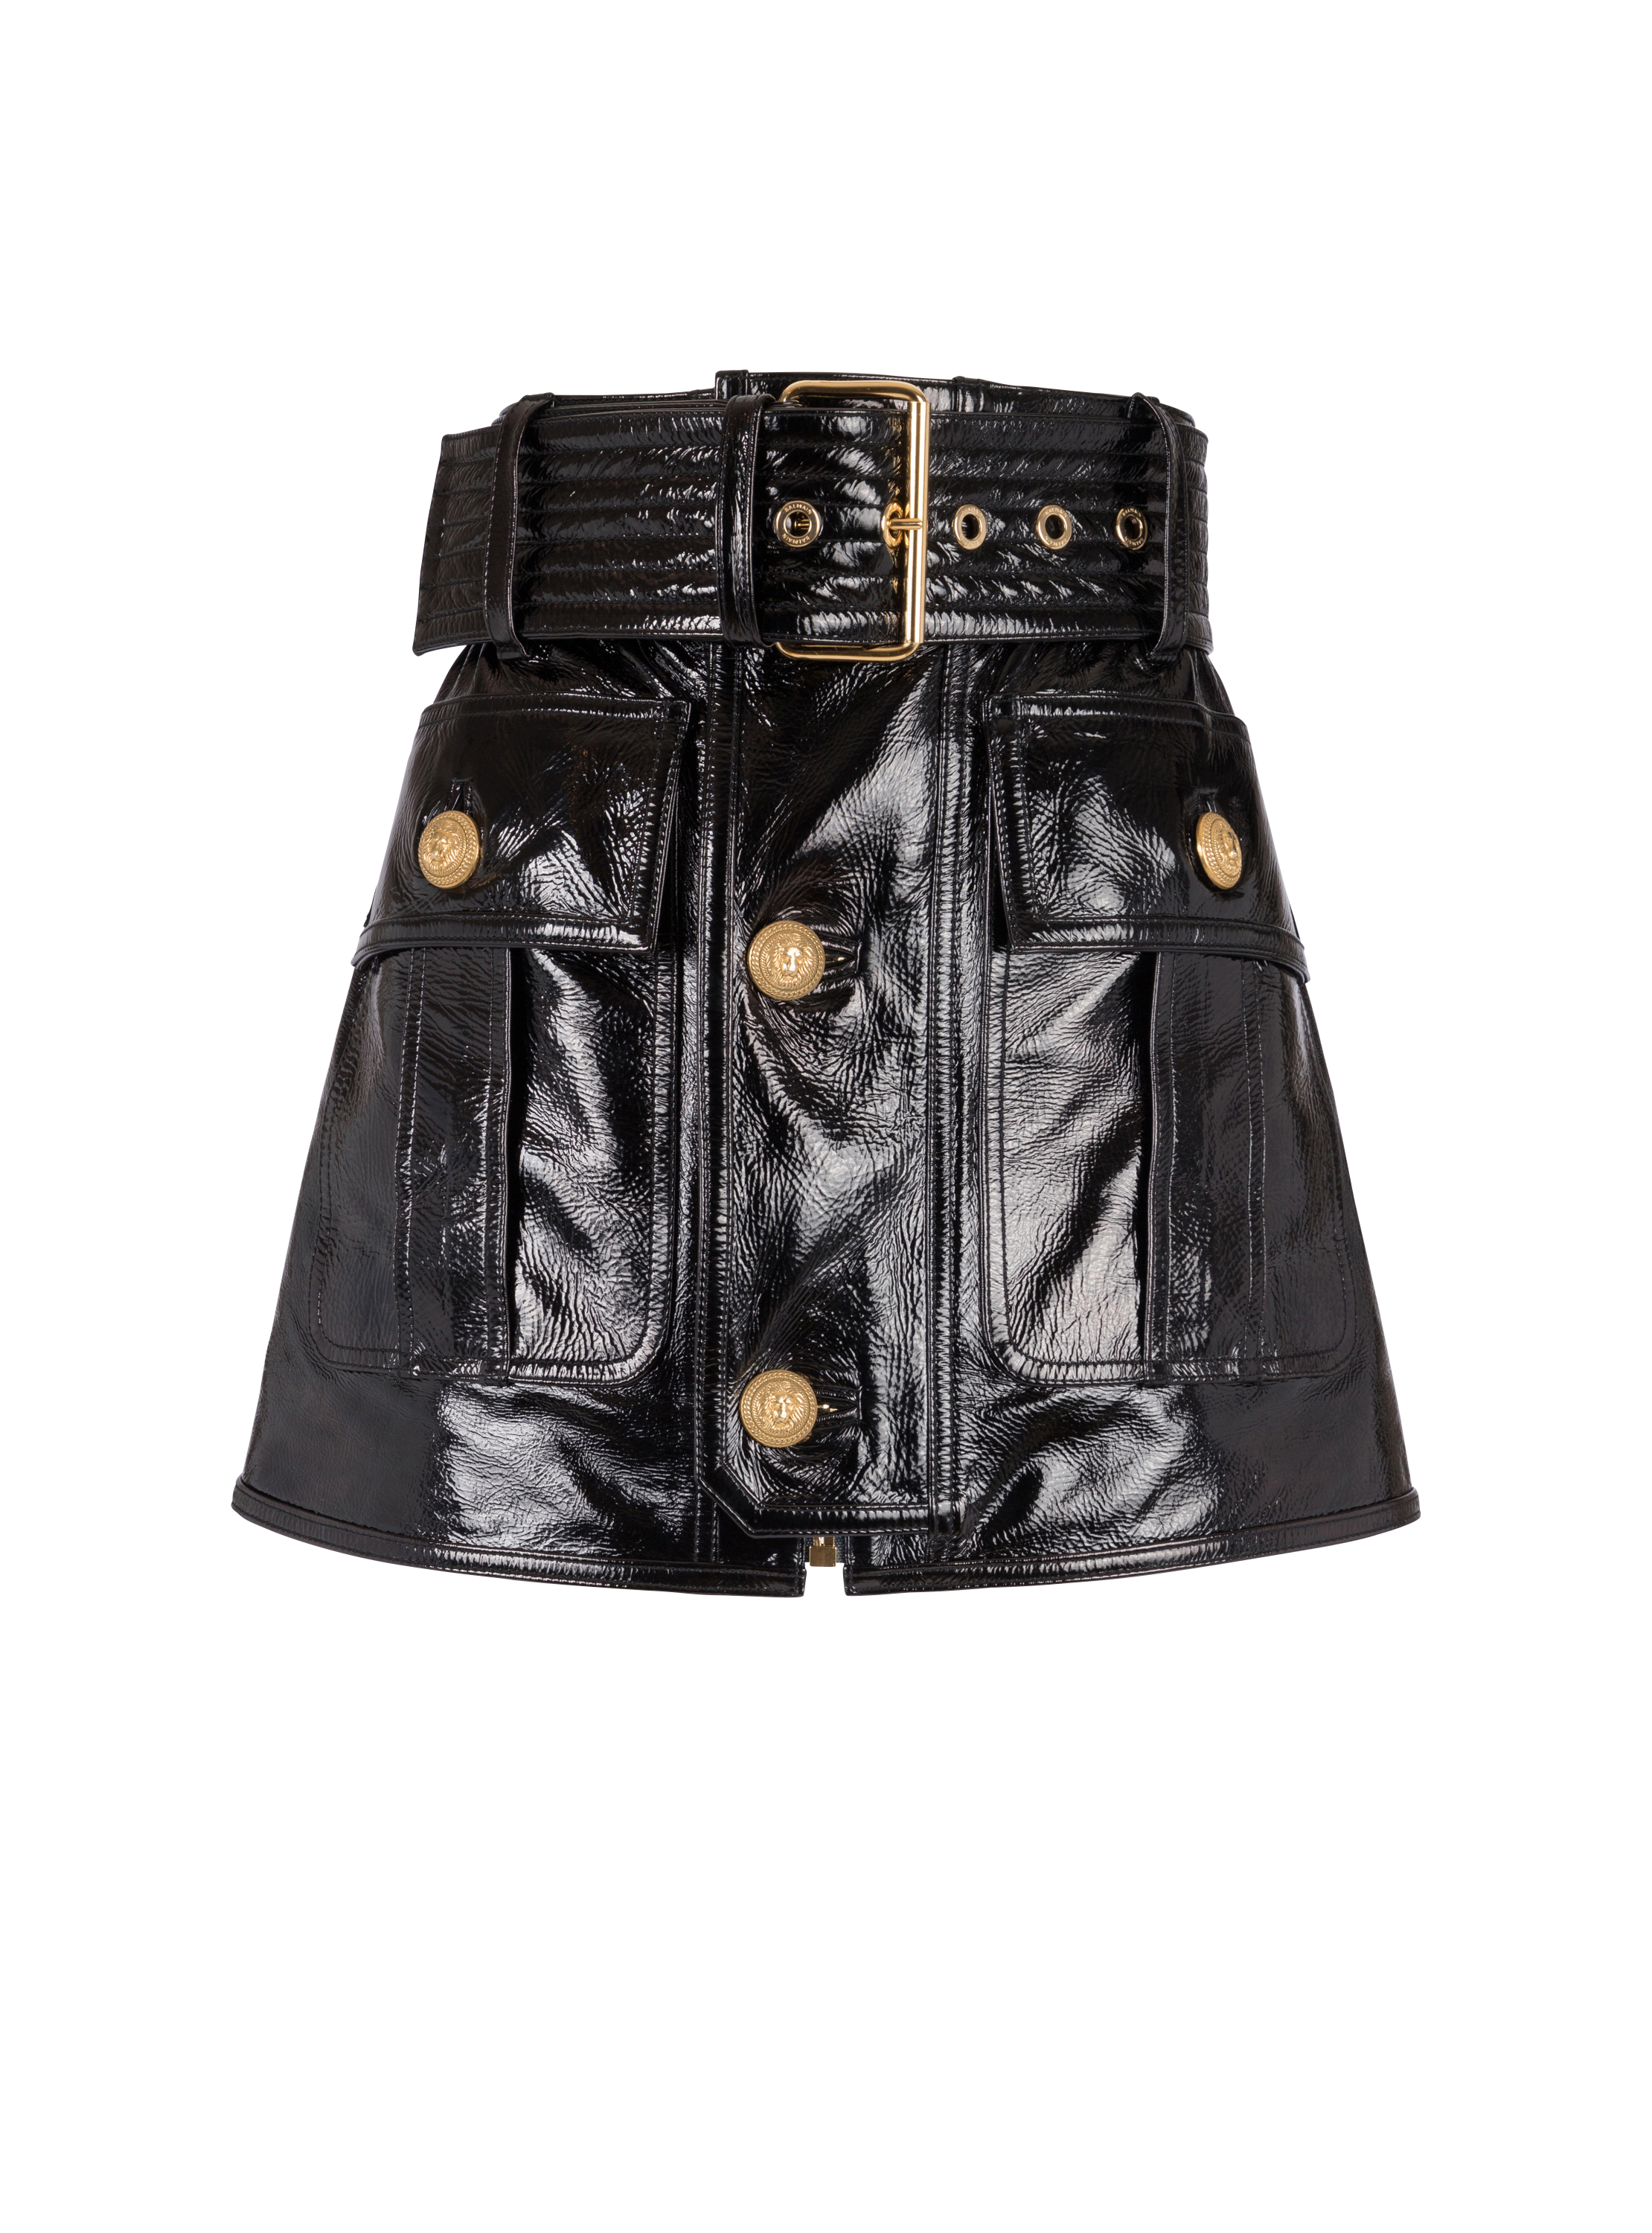 grænse positur Begrænsning Short patent leather skirt black - Women | BALMAIN